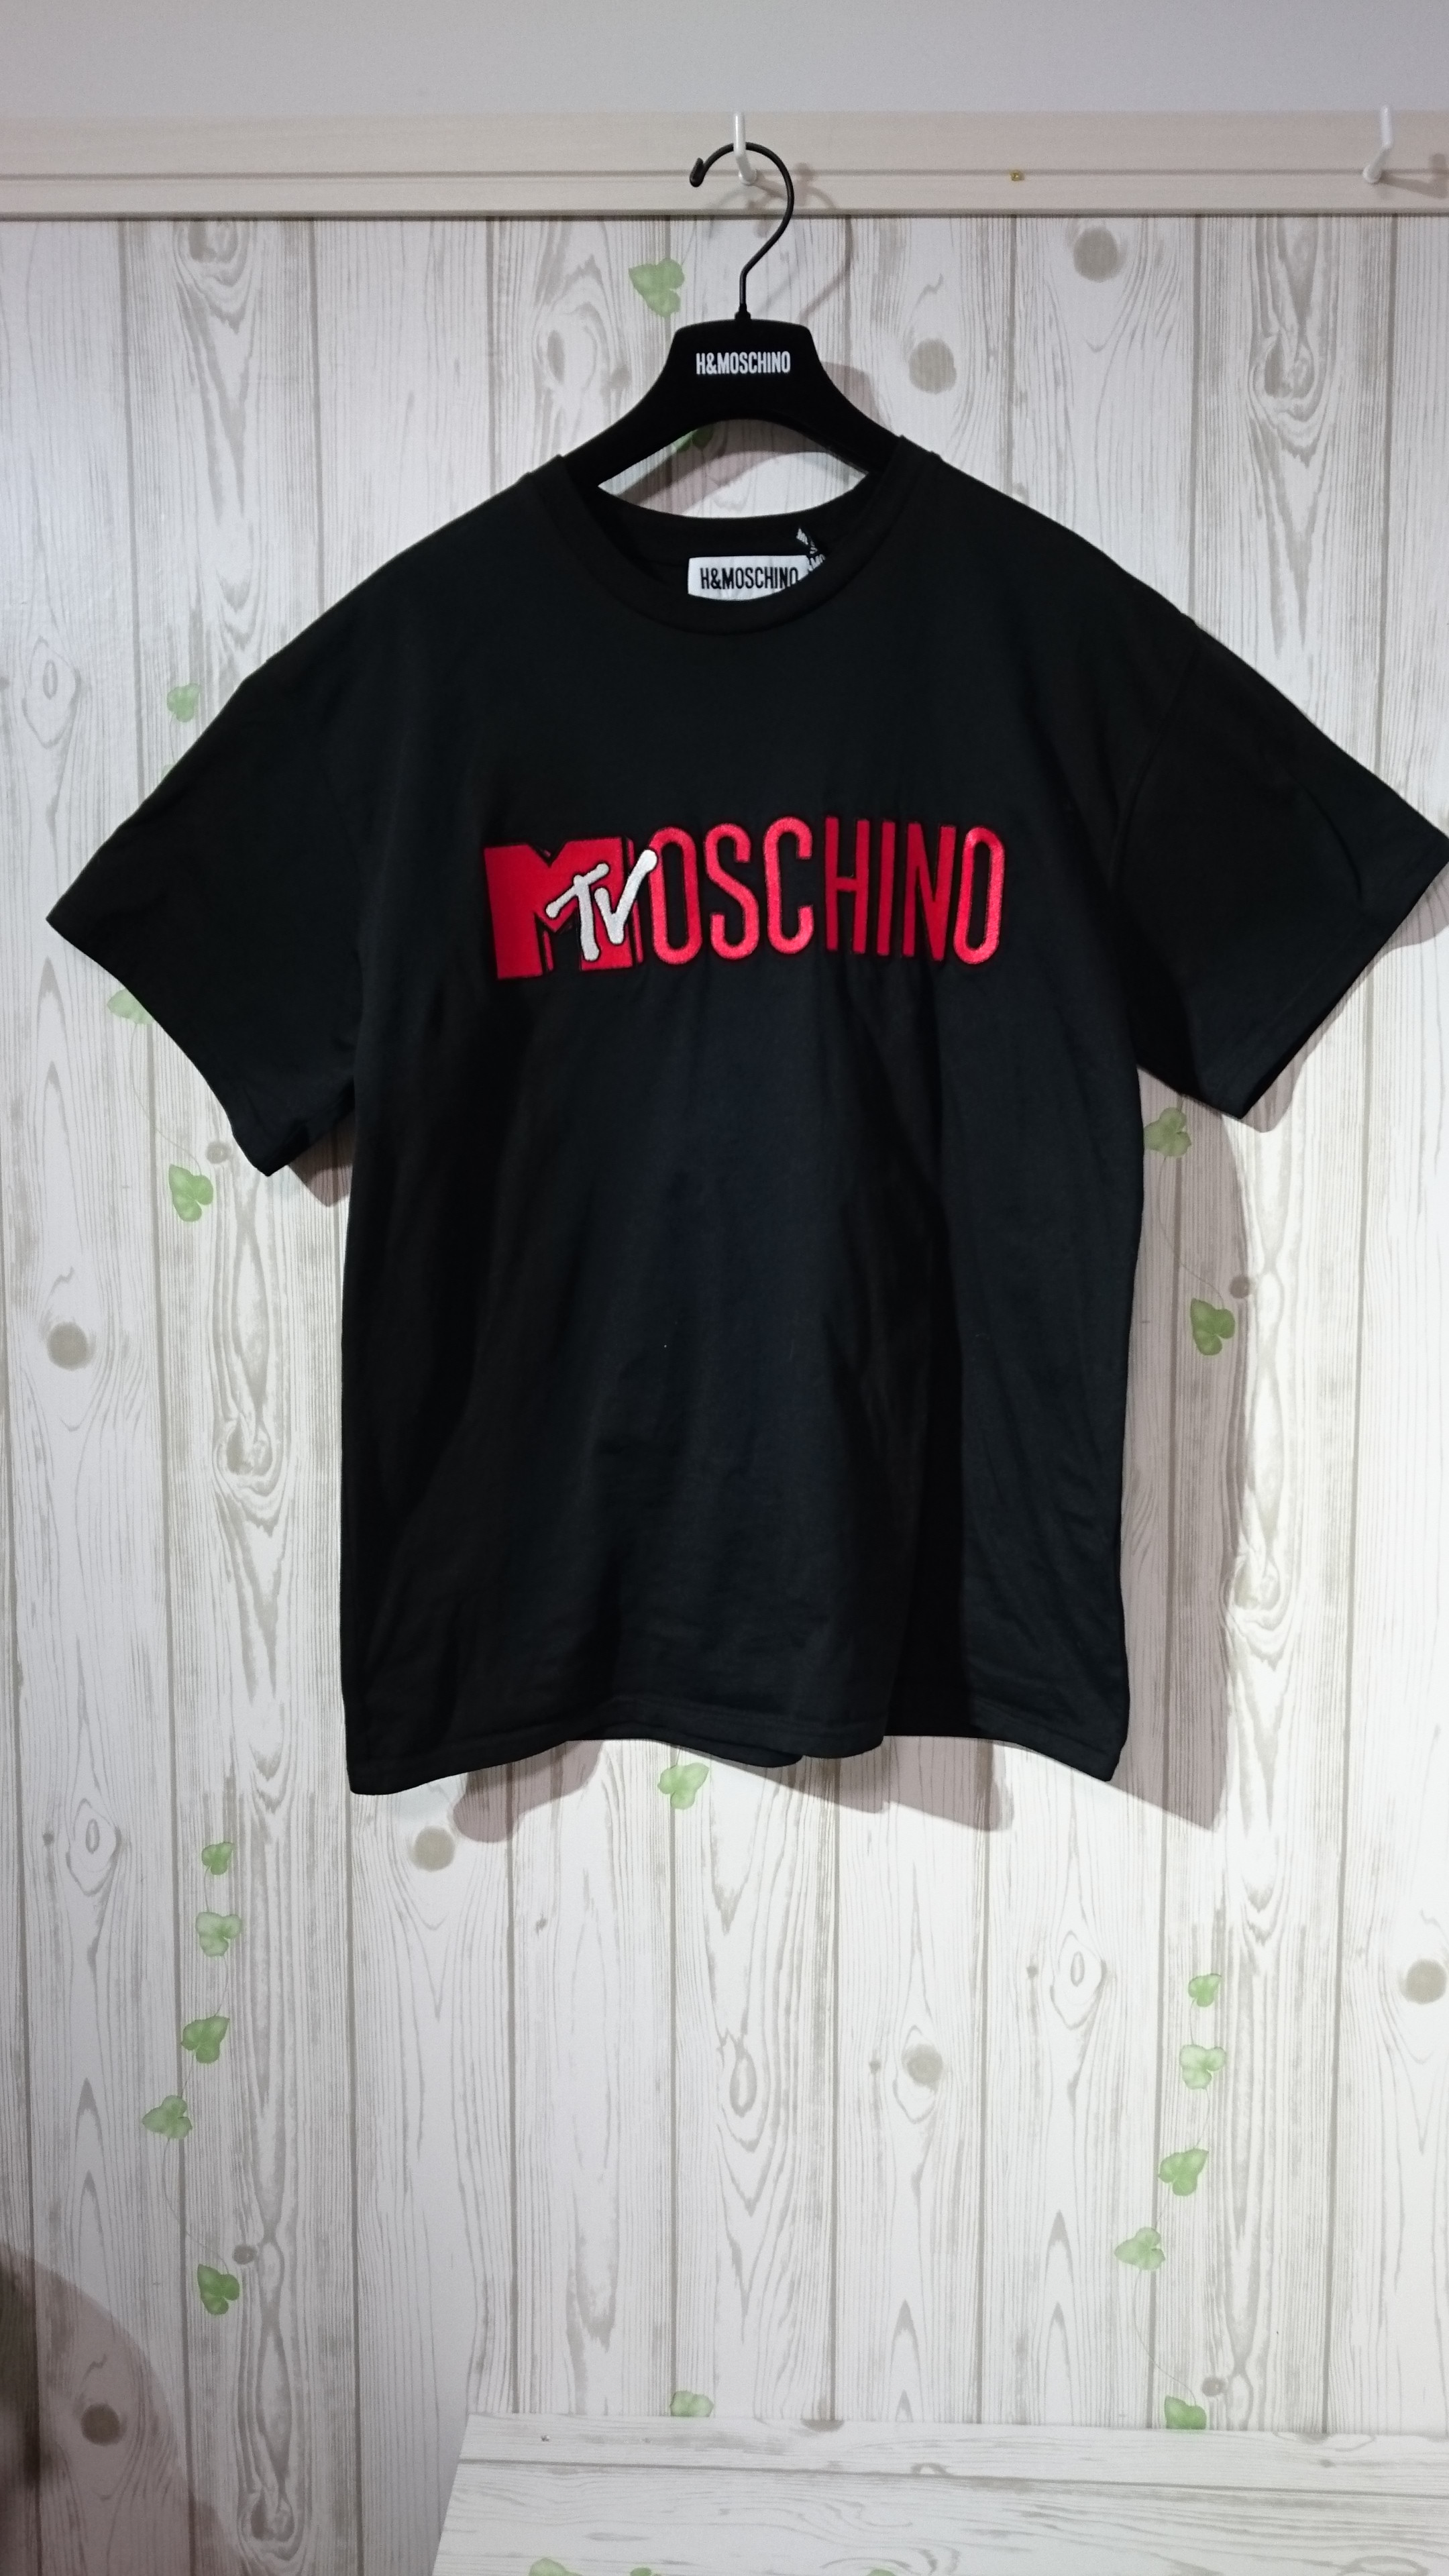 【限定品】H&M MOSCHINO コラボTシャツ ロゴTシャツ 黒